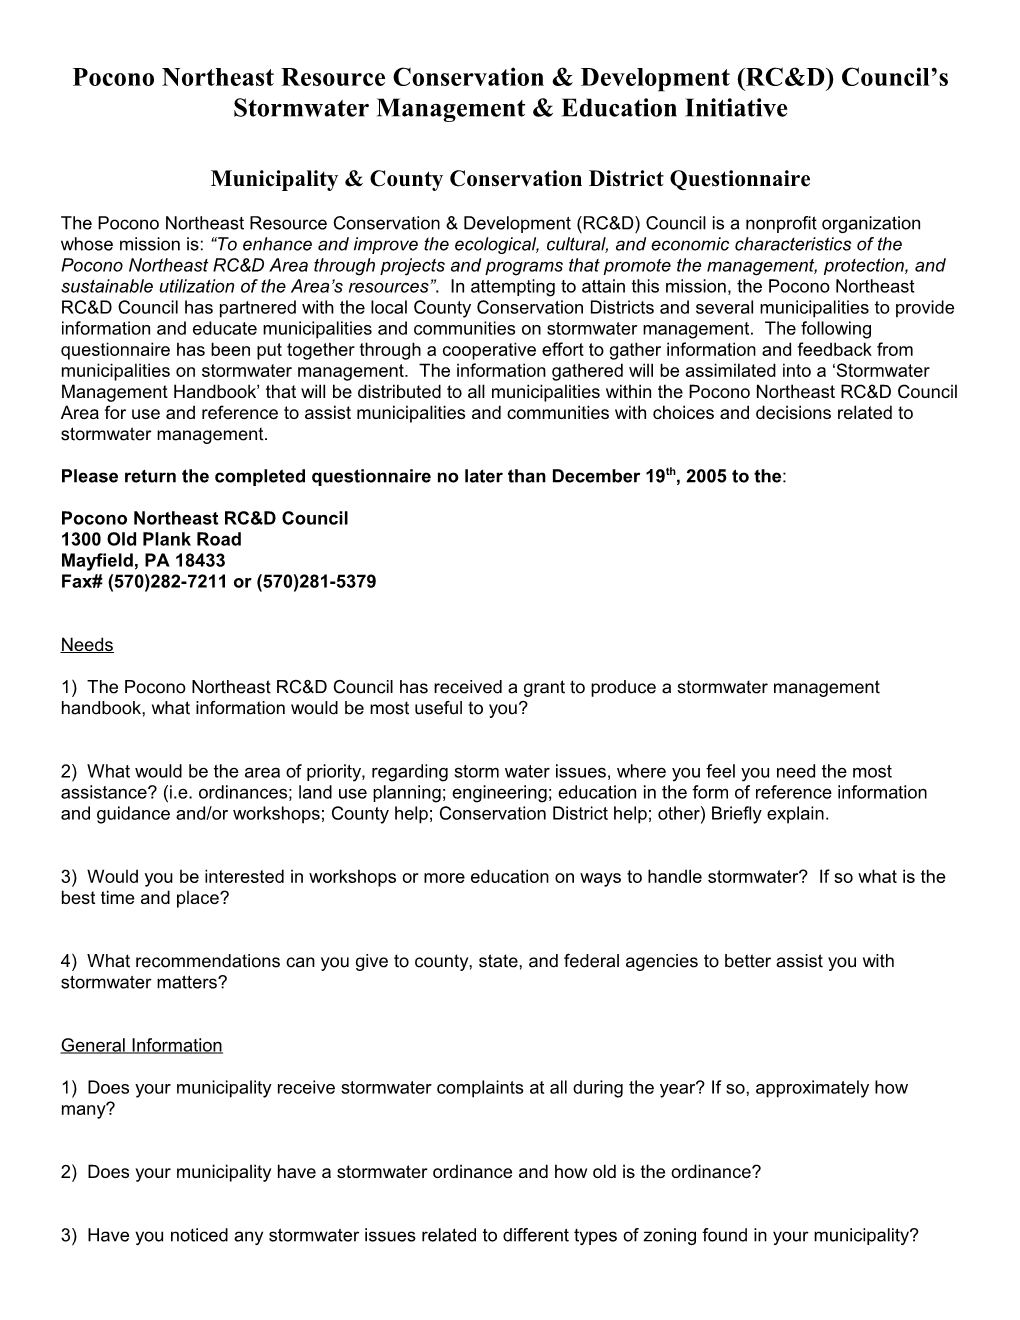 Pocono Northeast Resource Conservation & Development (RC&D) Council S Stormwater Management